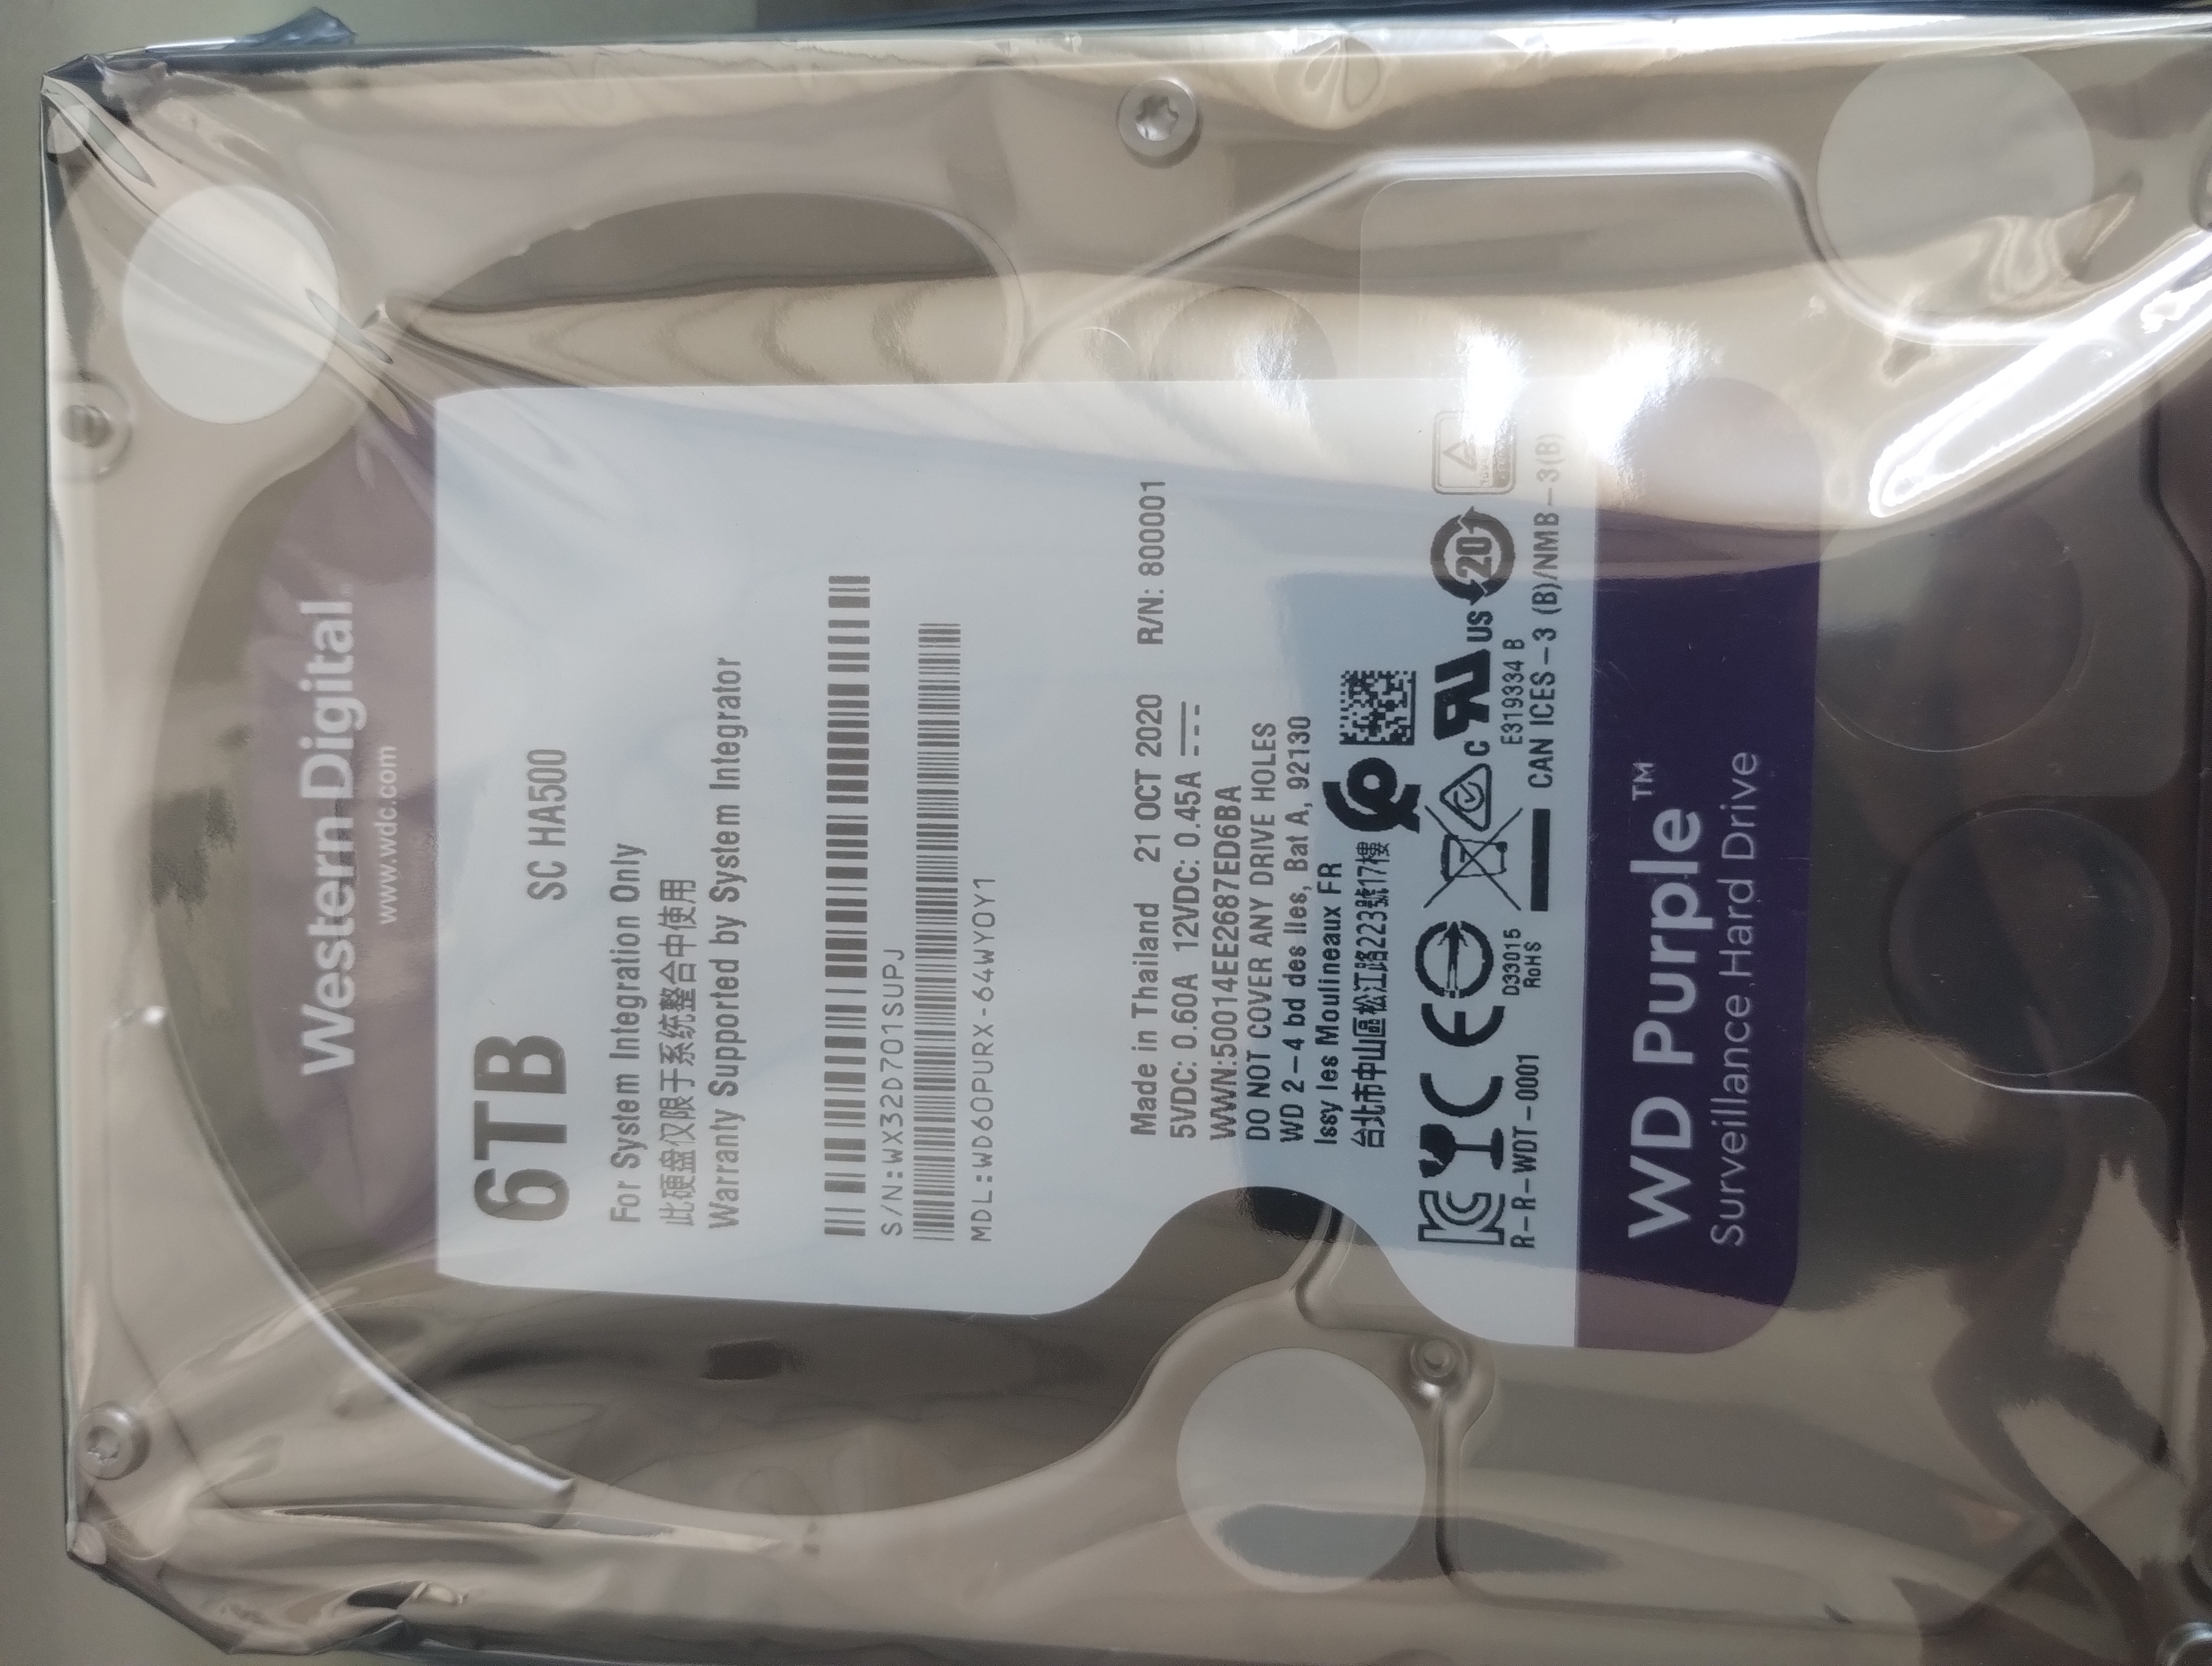 Wd60purx-64wy0y1 wd 6tb purple sata surveillance hard drive sata iii 64mb 5400rpm 3.5''